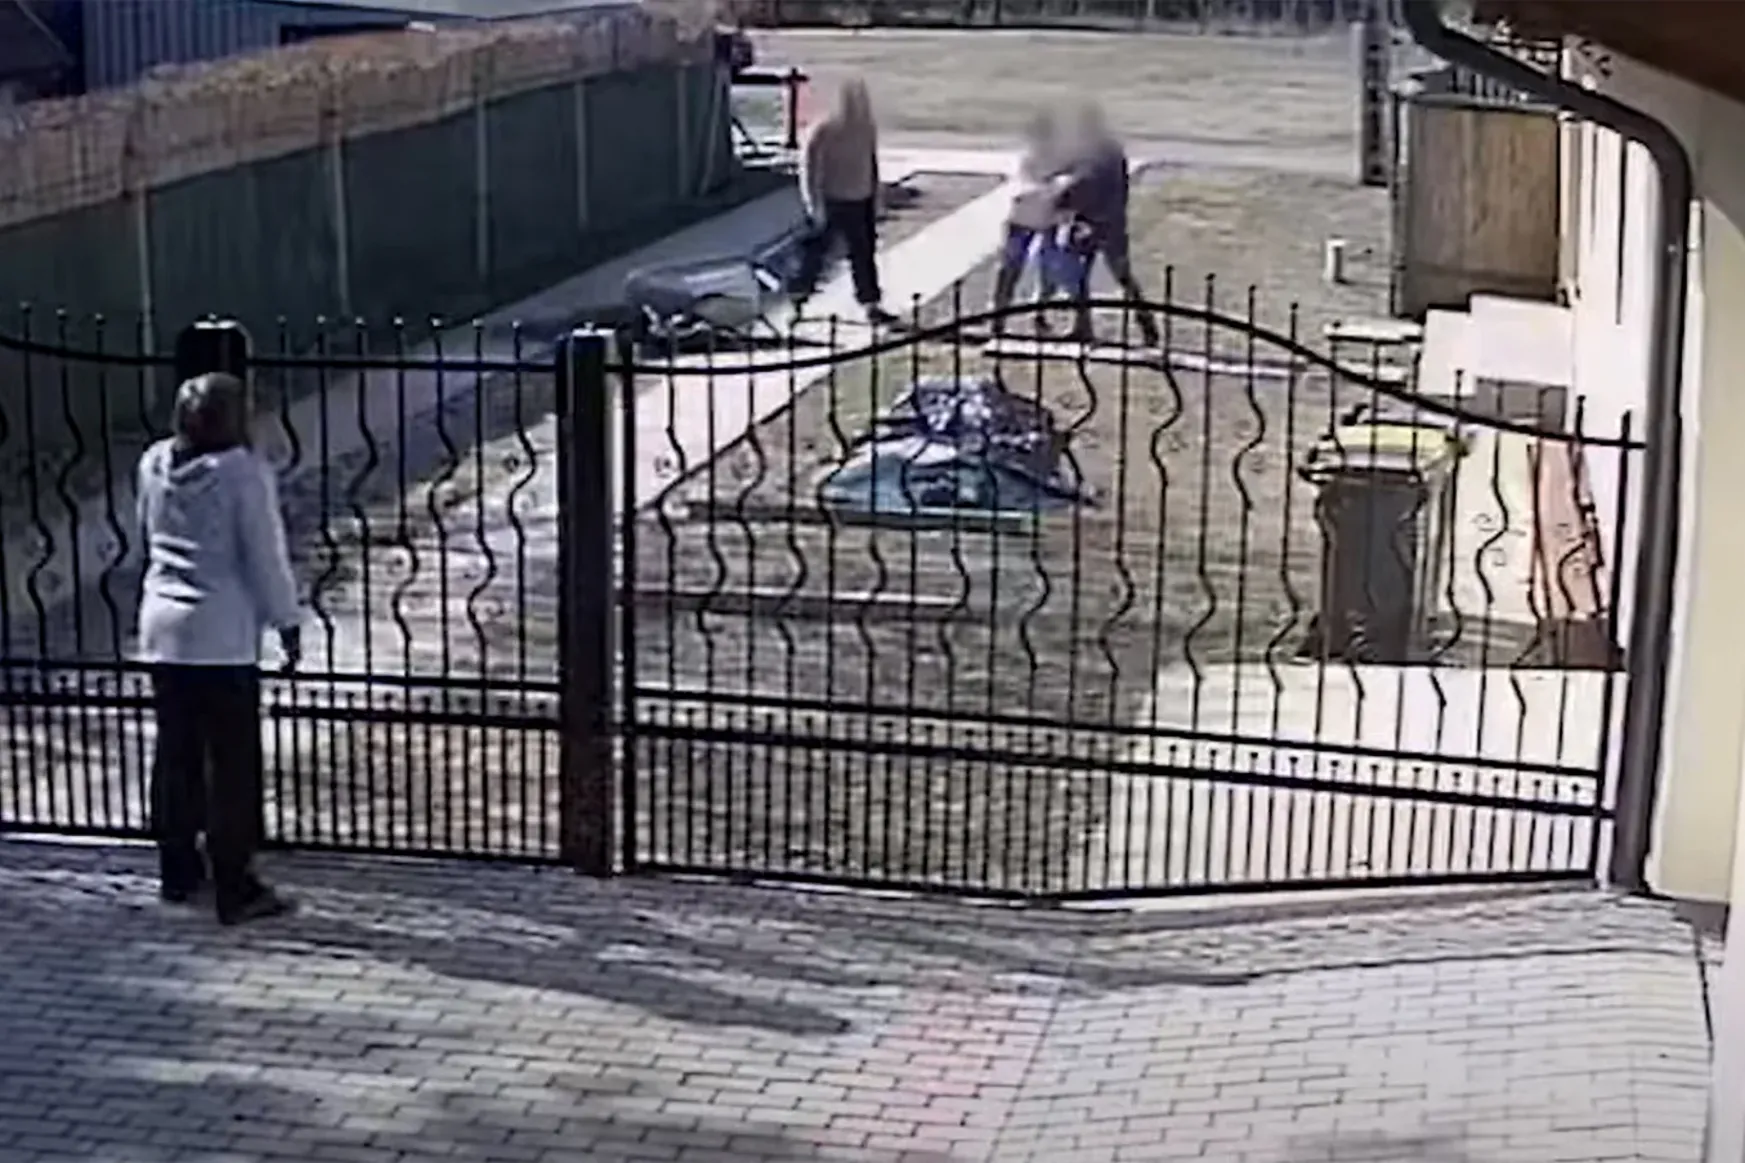 Videó van róla, hogy a rendőr megüti a szomszédot, mégis több mint egy éve húzódik a nyomozás